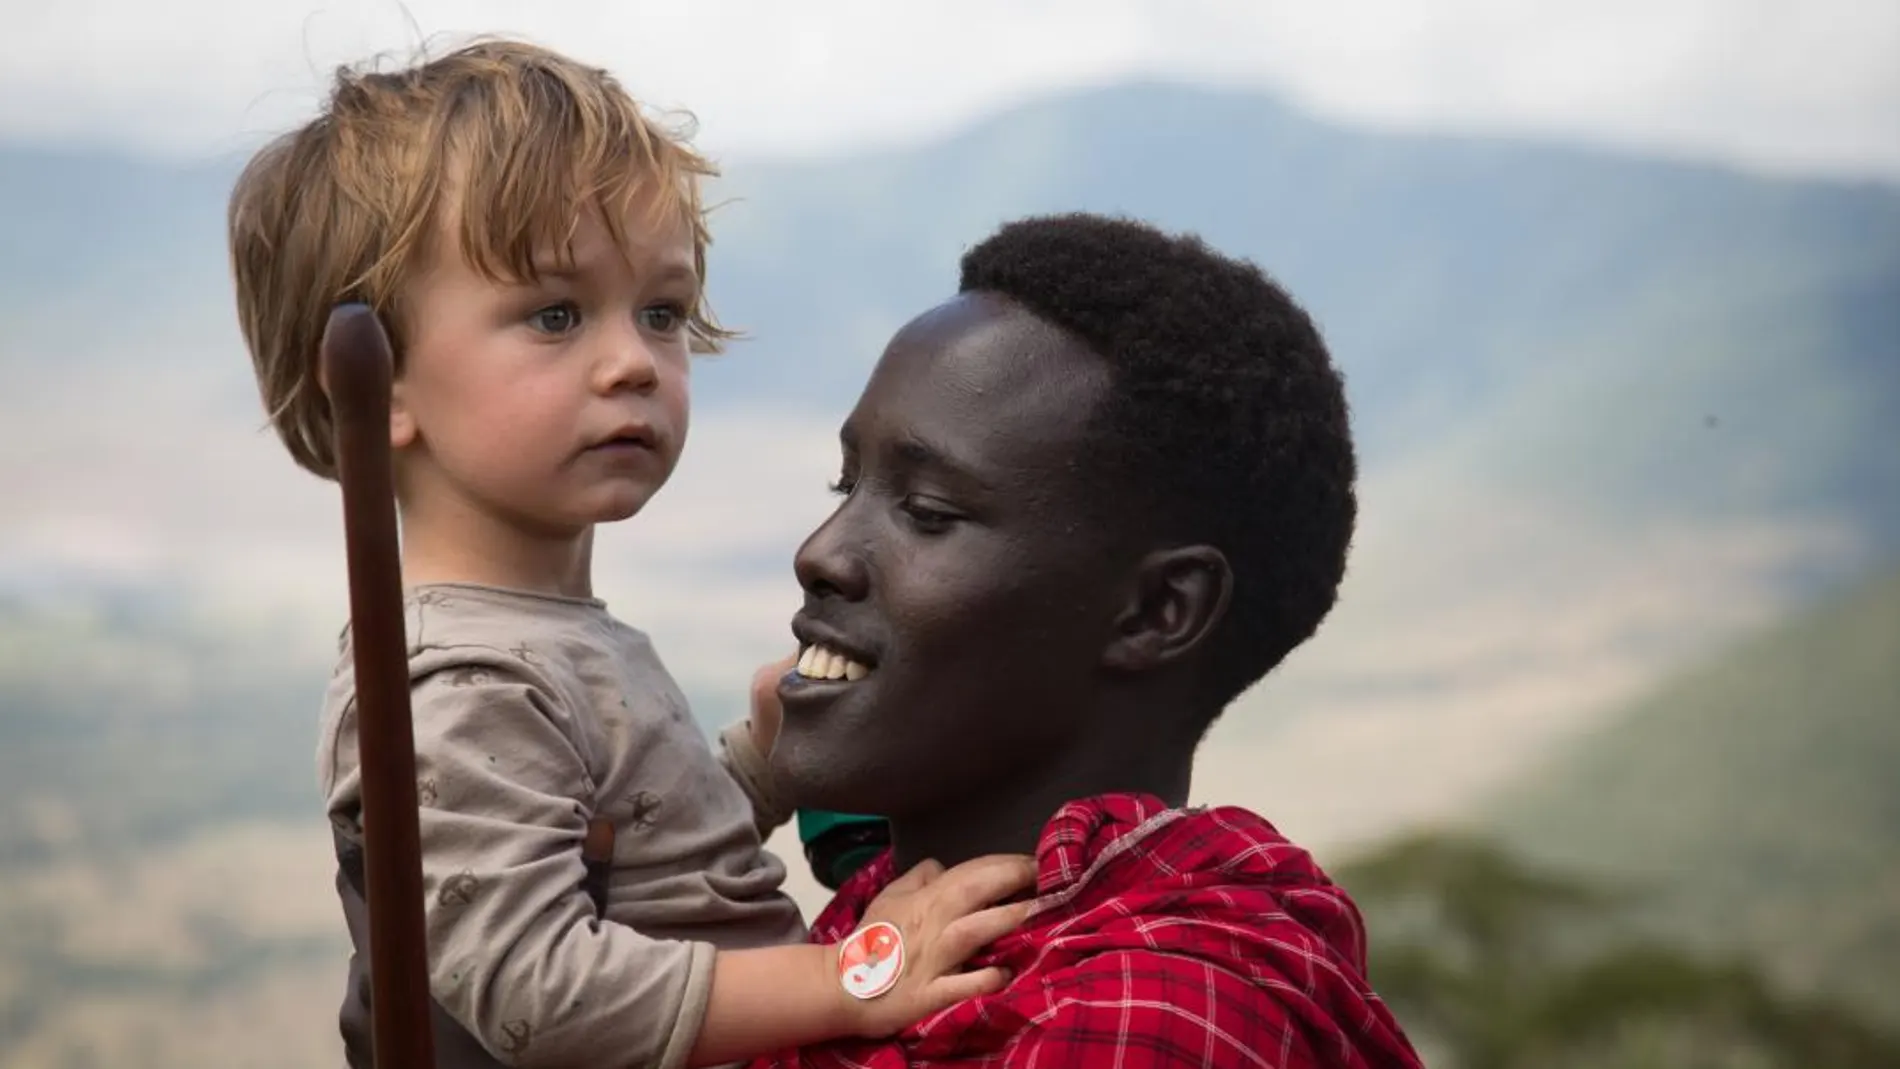 Atreverse a hacer un safari en África en familia: Un sueño alcanzable